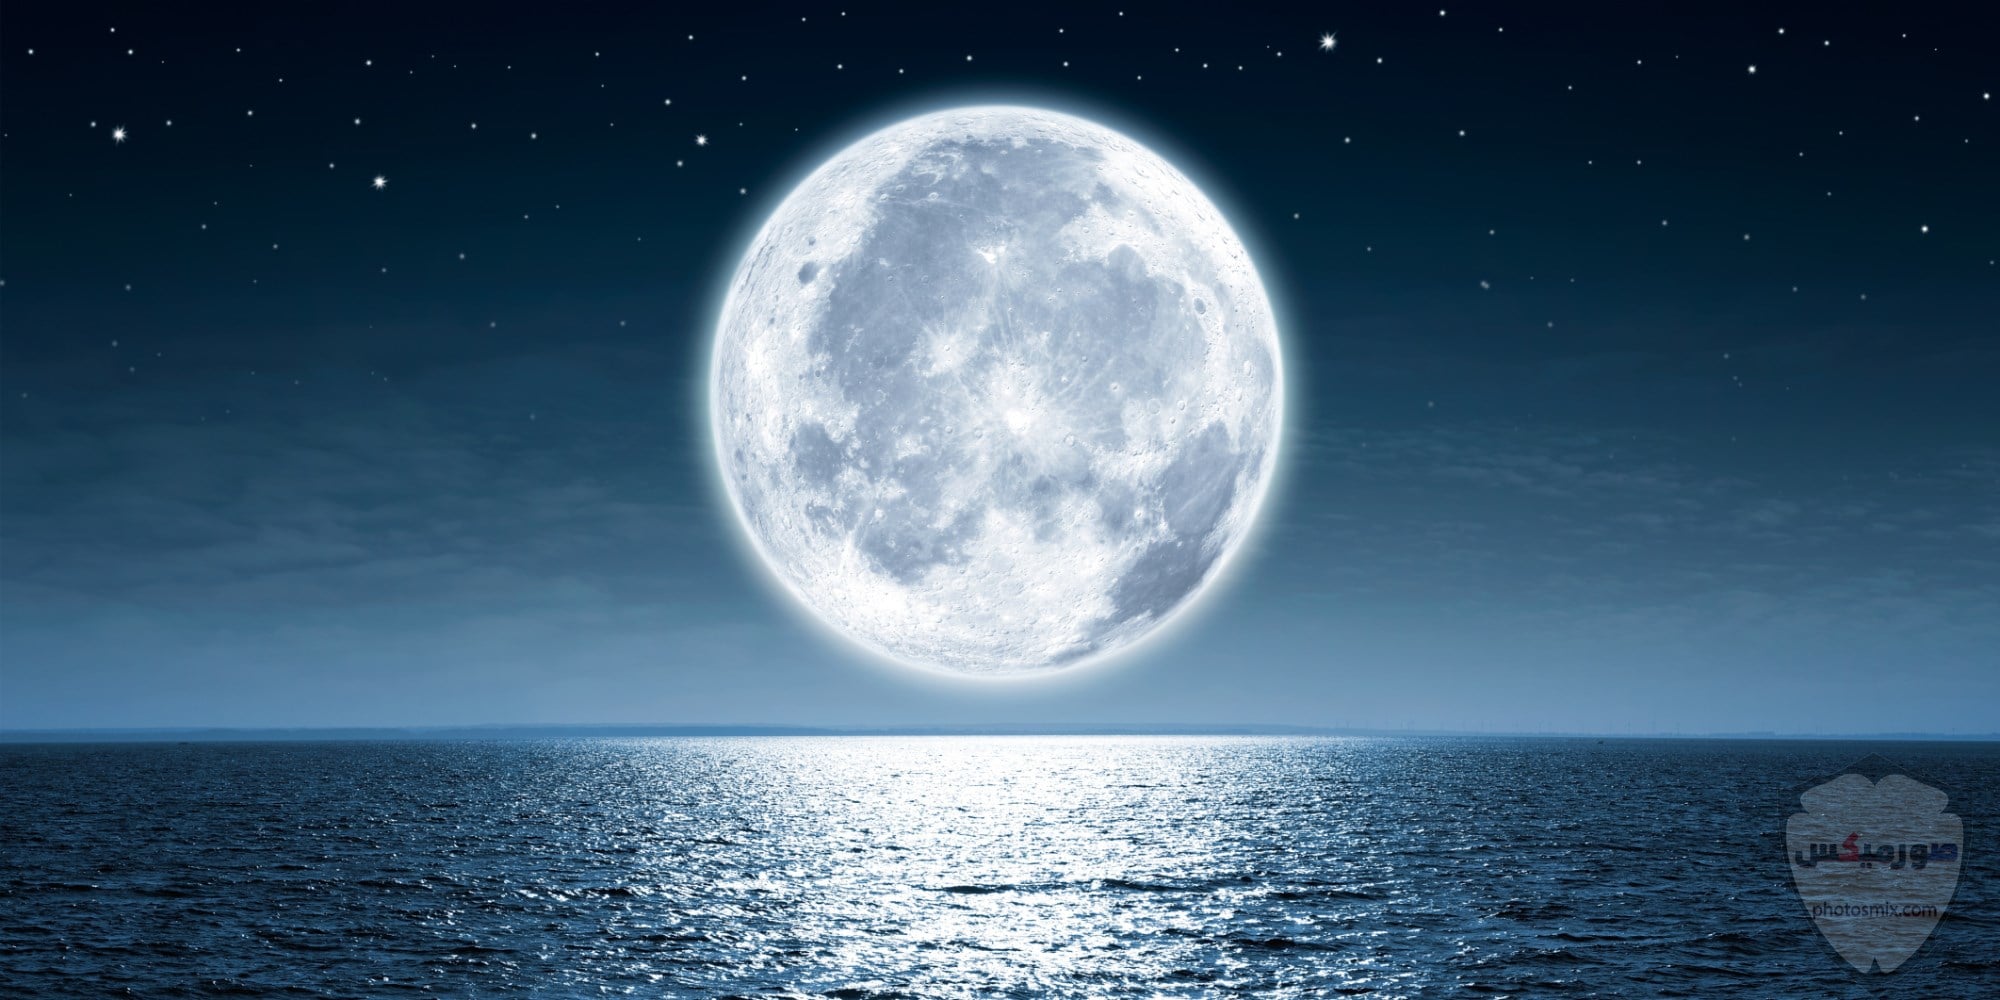 صور القمر والسماء والنجوم خلفيات للقمر والبدر والهلال عالية الجودة 21